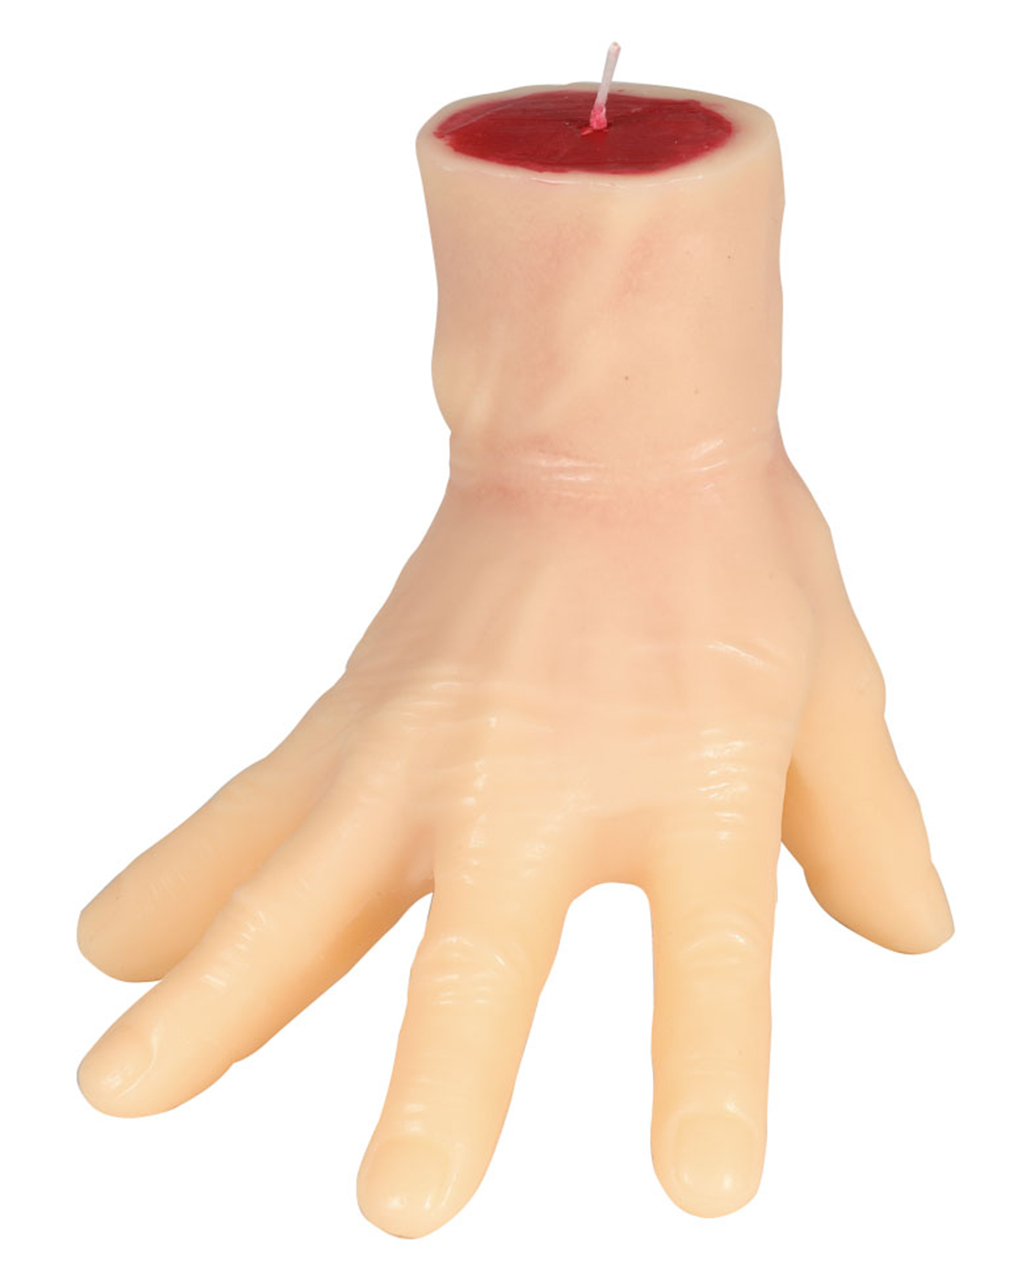 Gruselige Blutige Hand Abgetrennte Gliedmaßen Abgehackte Körperteile 